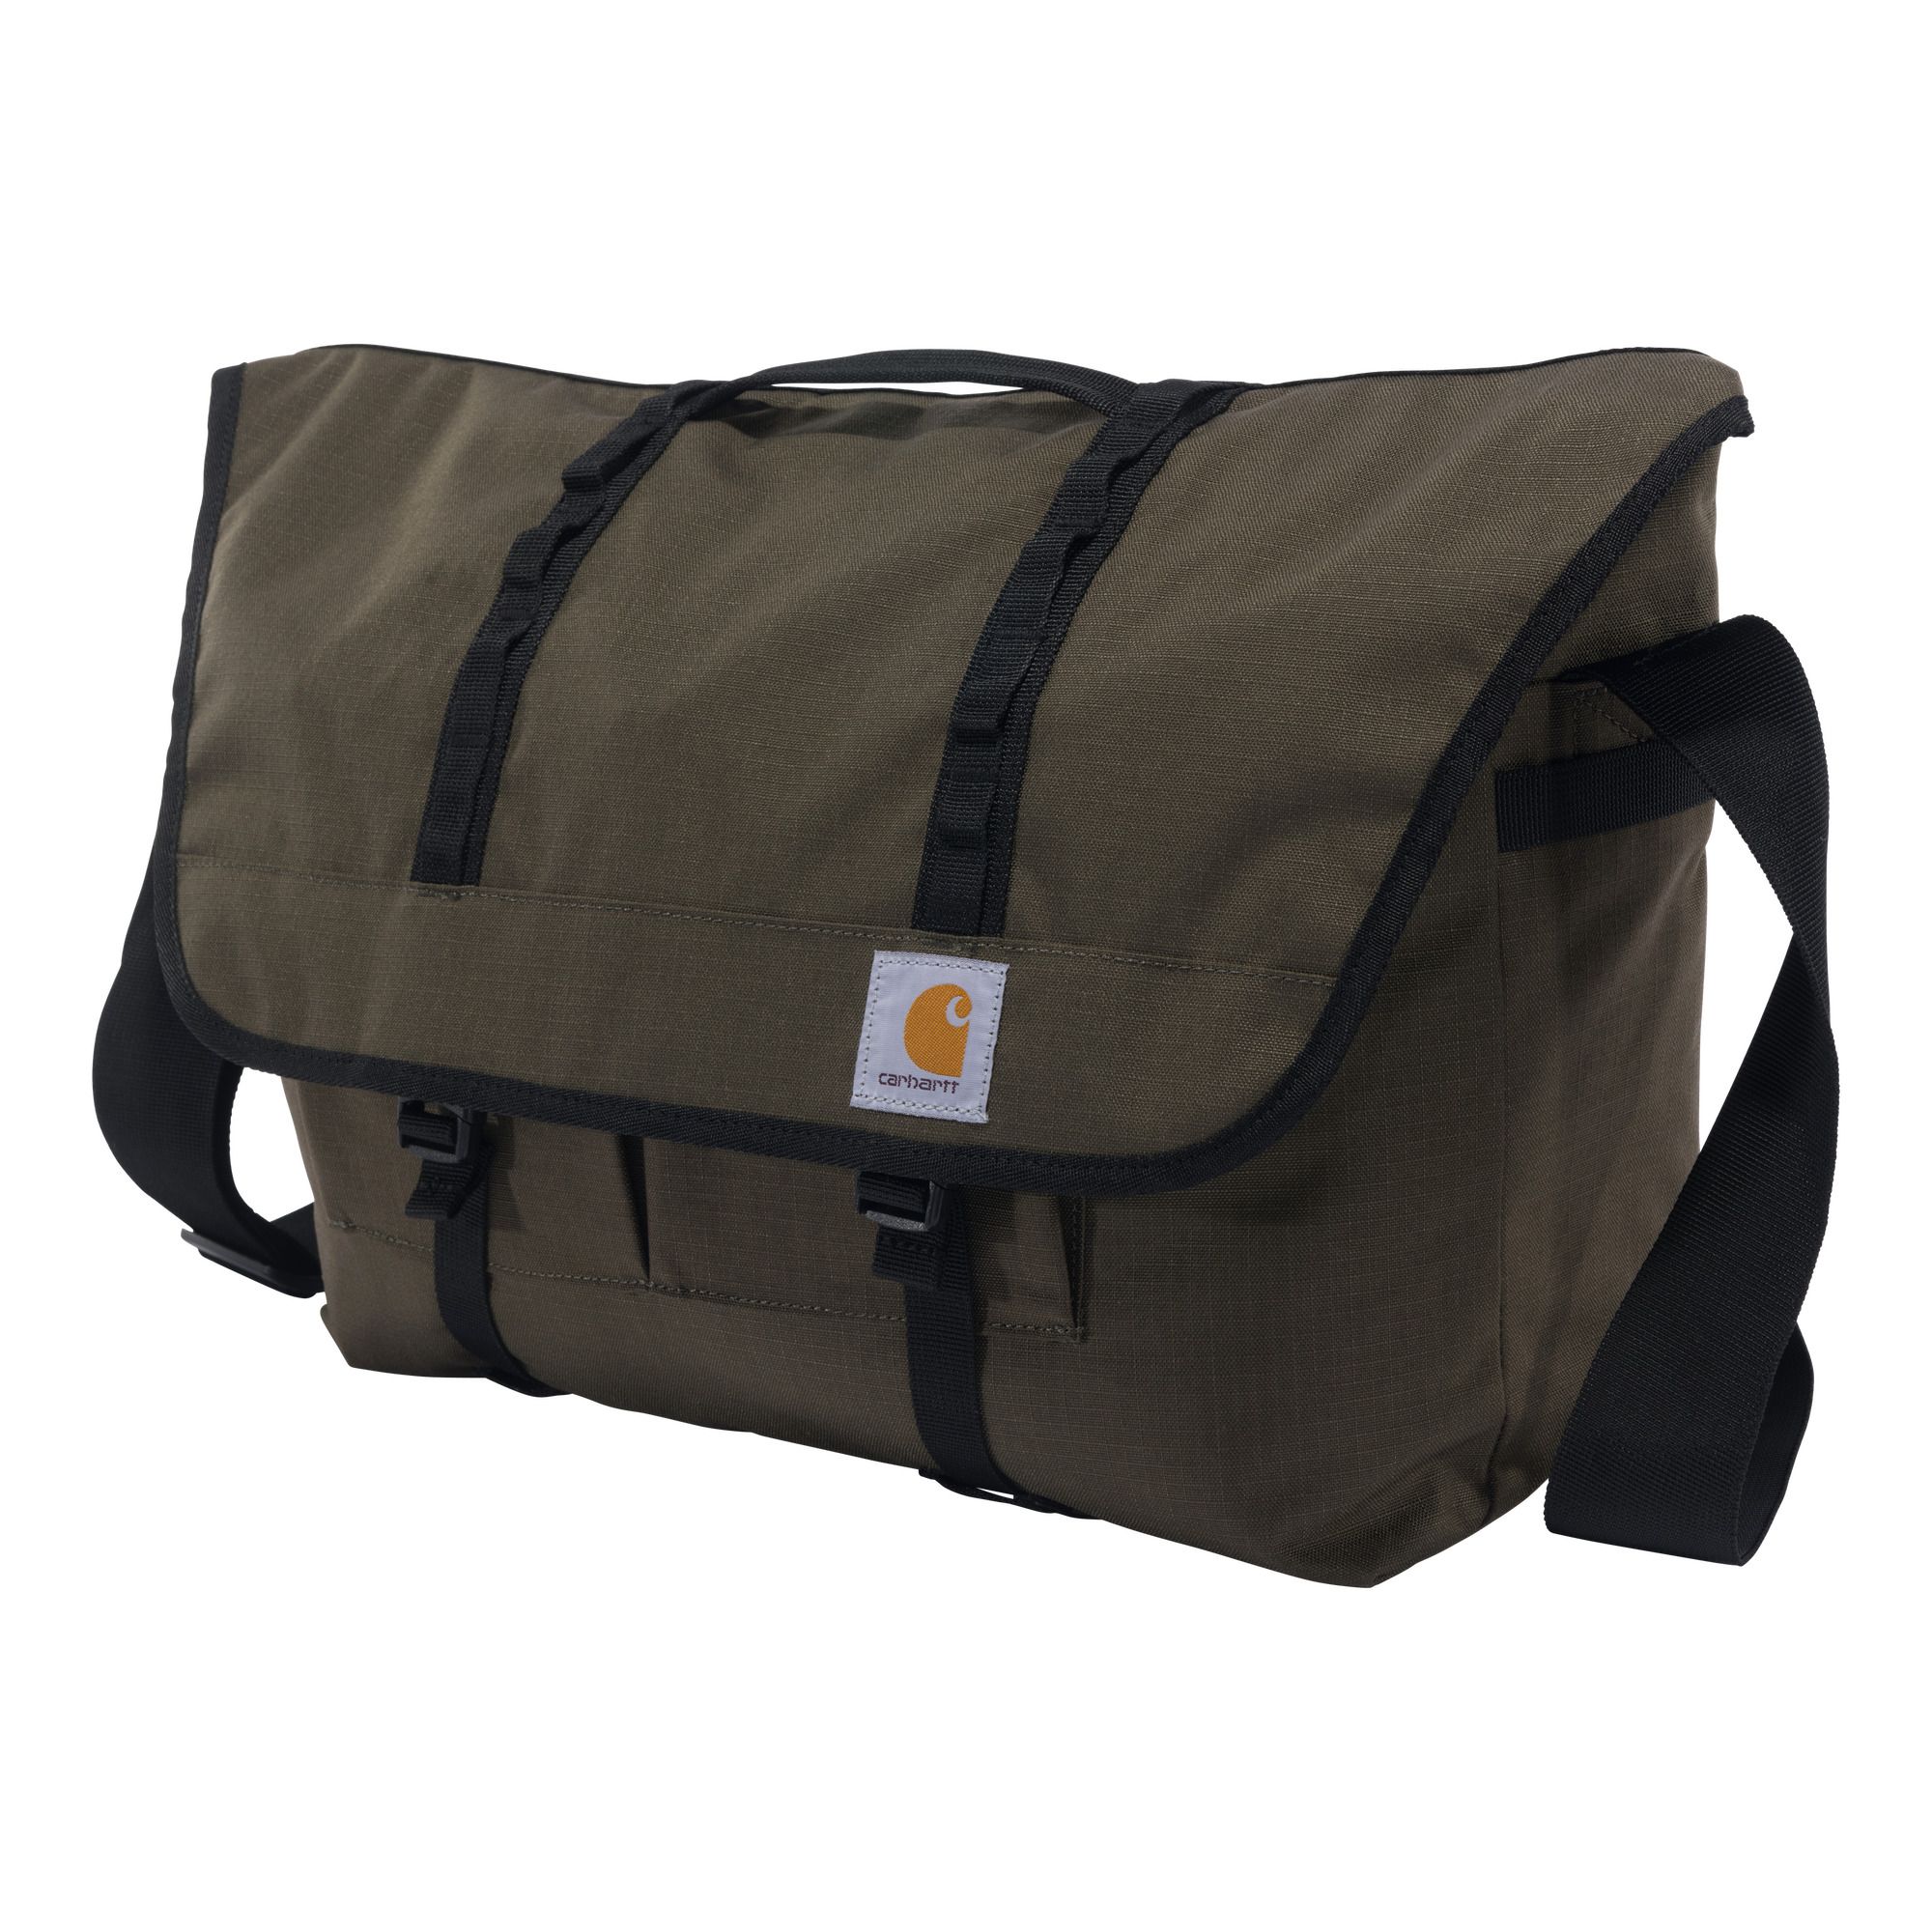 Fingerhut - Carhartt Cargo Series Messenger Bag